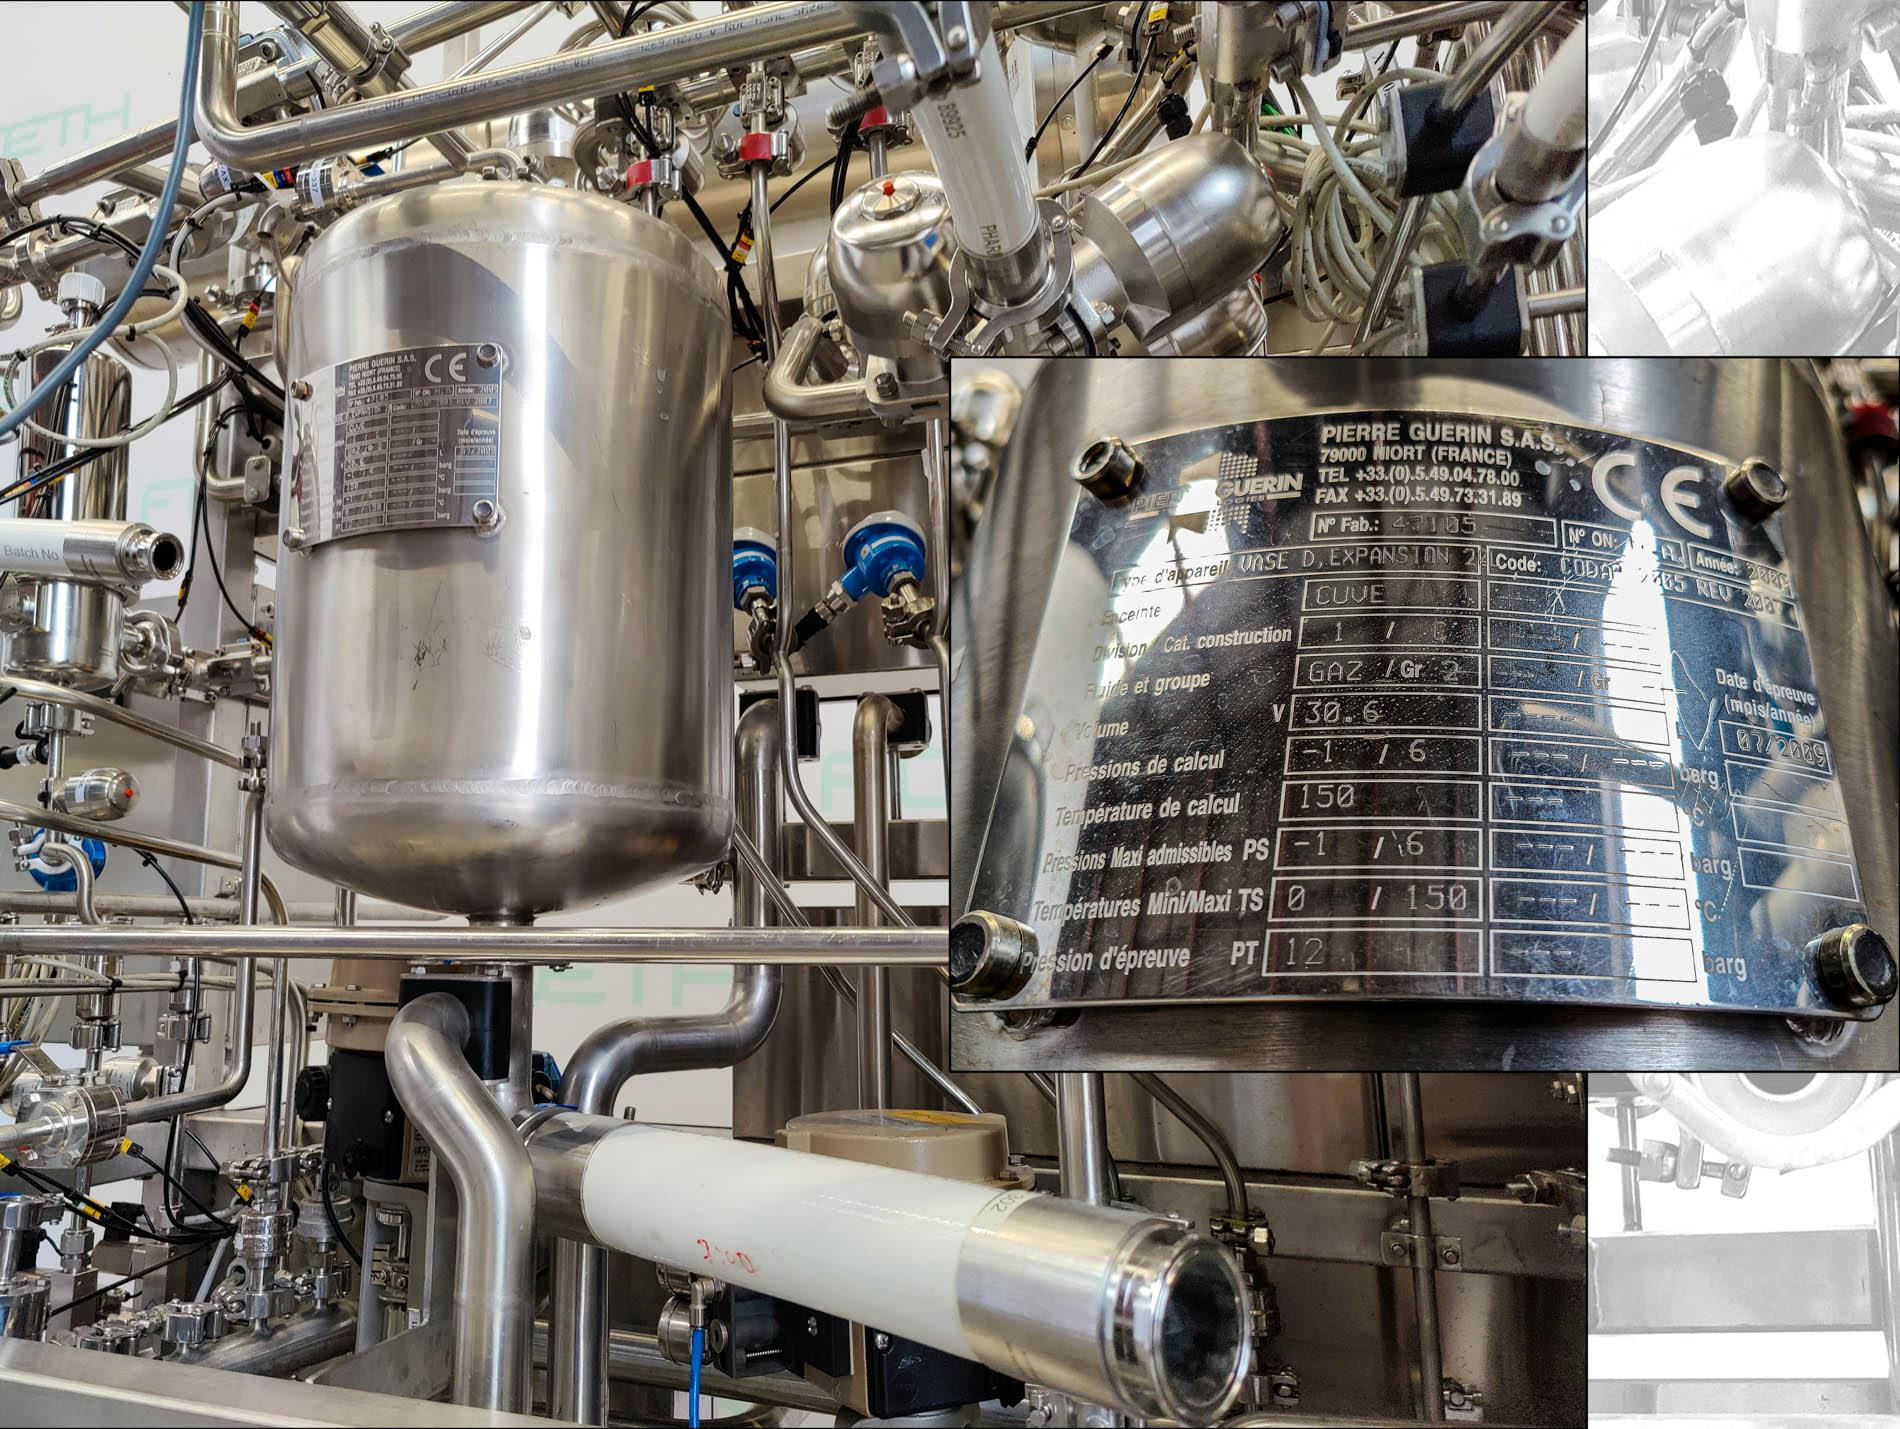 Pierre Guerin Bioreactor 750L - Reactor de acero inoxidable - image 12